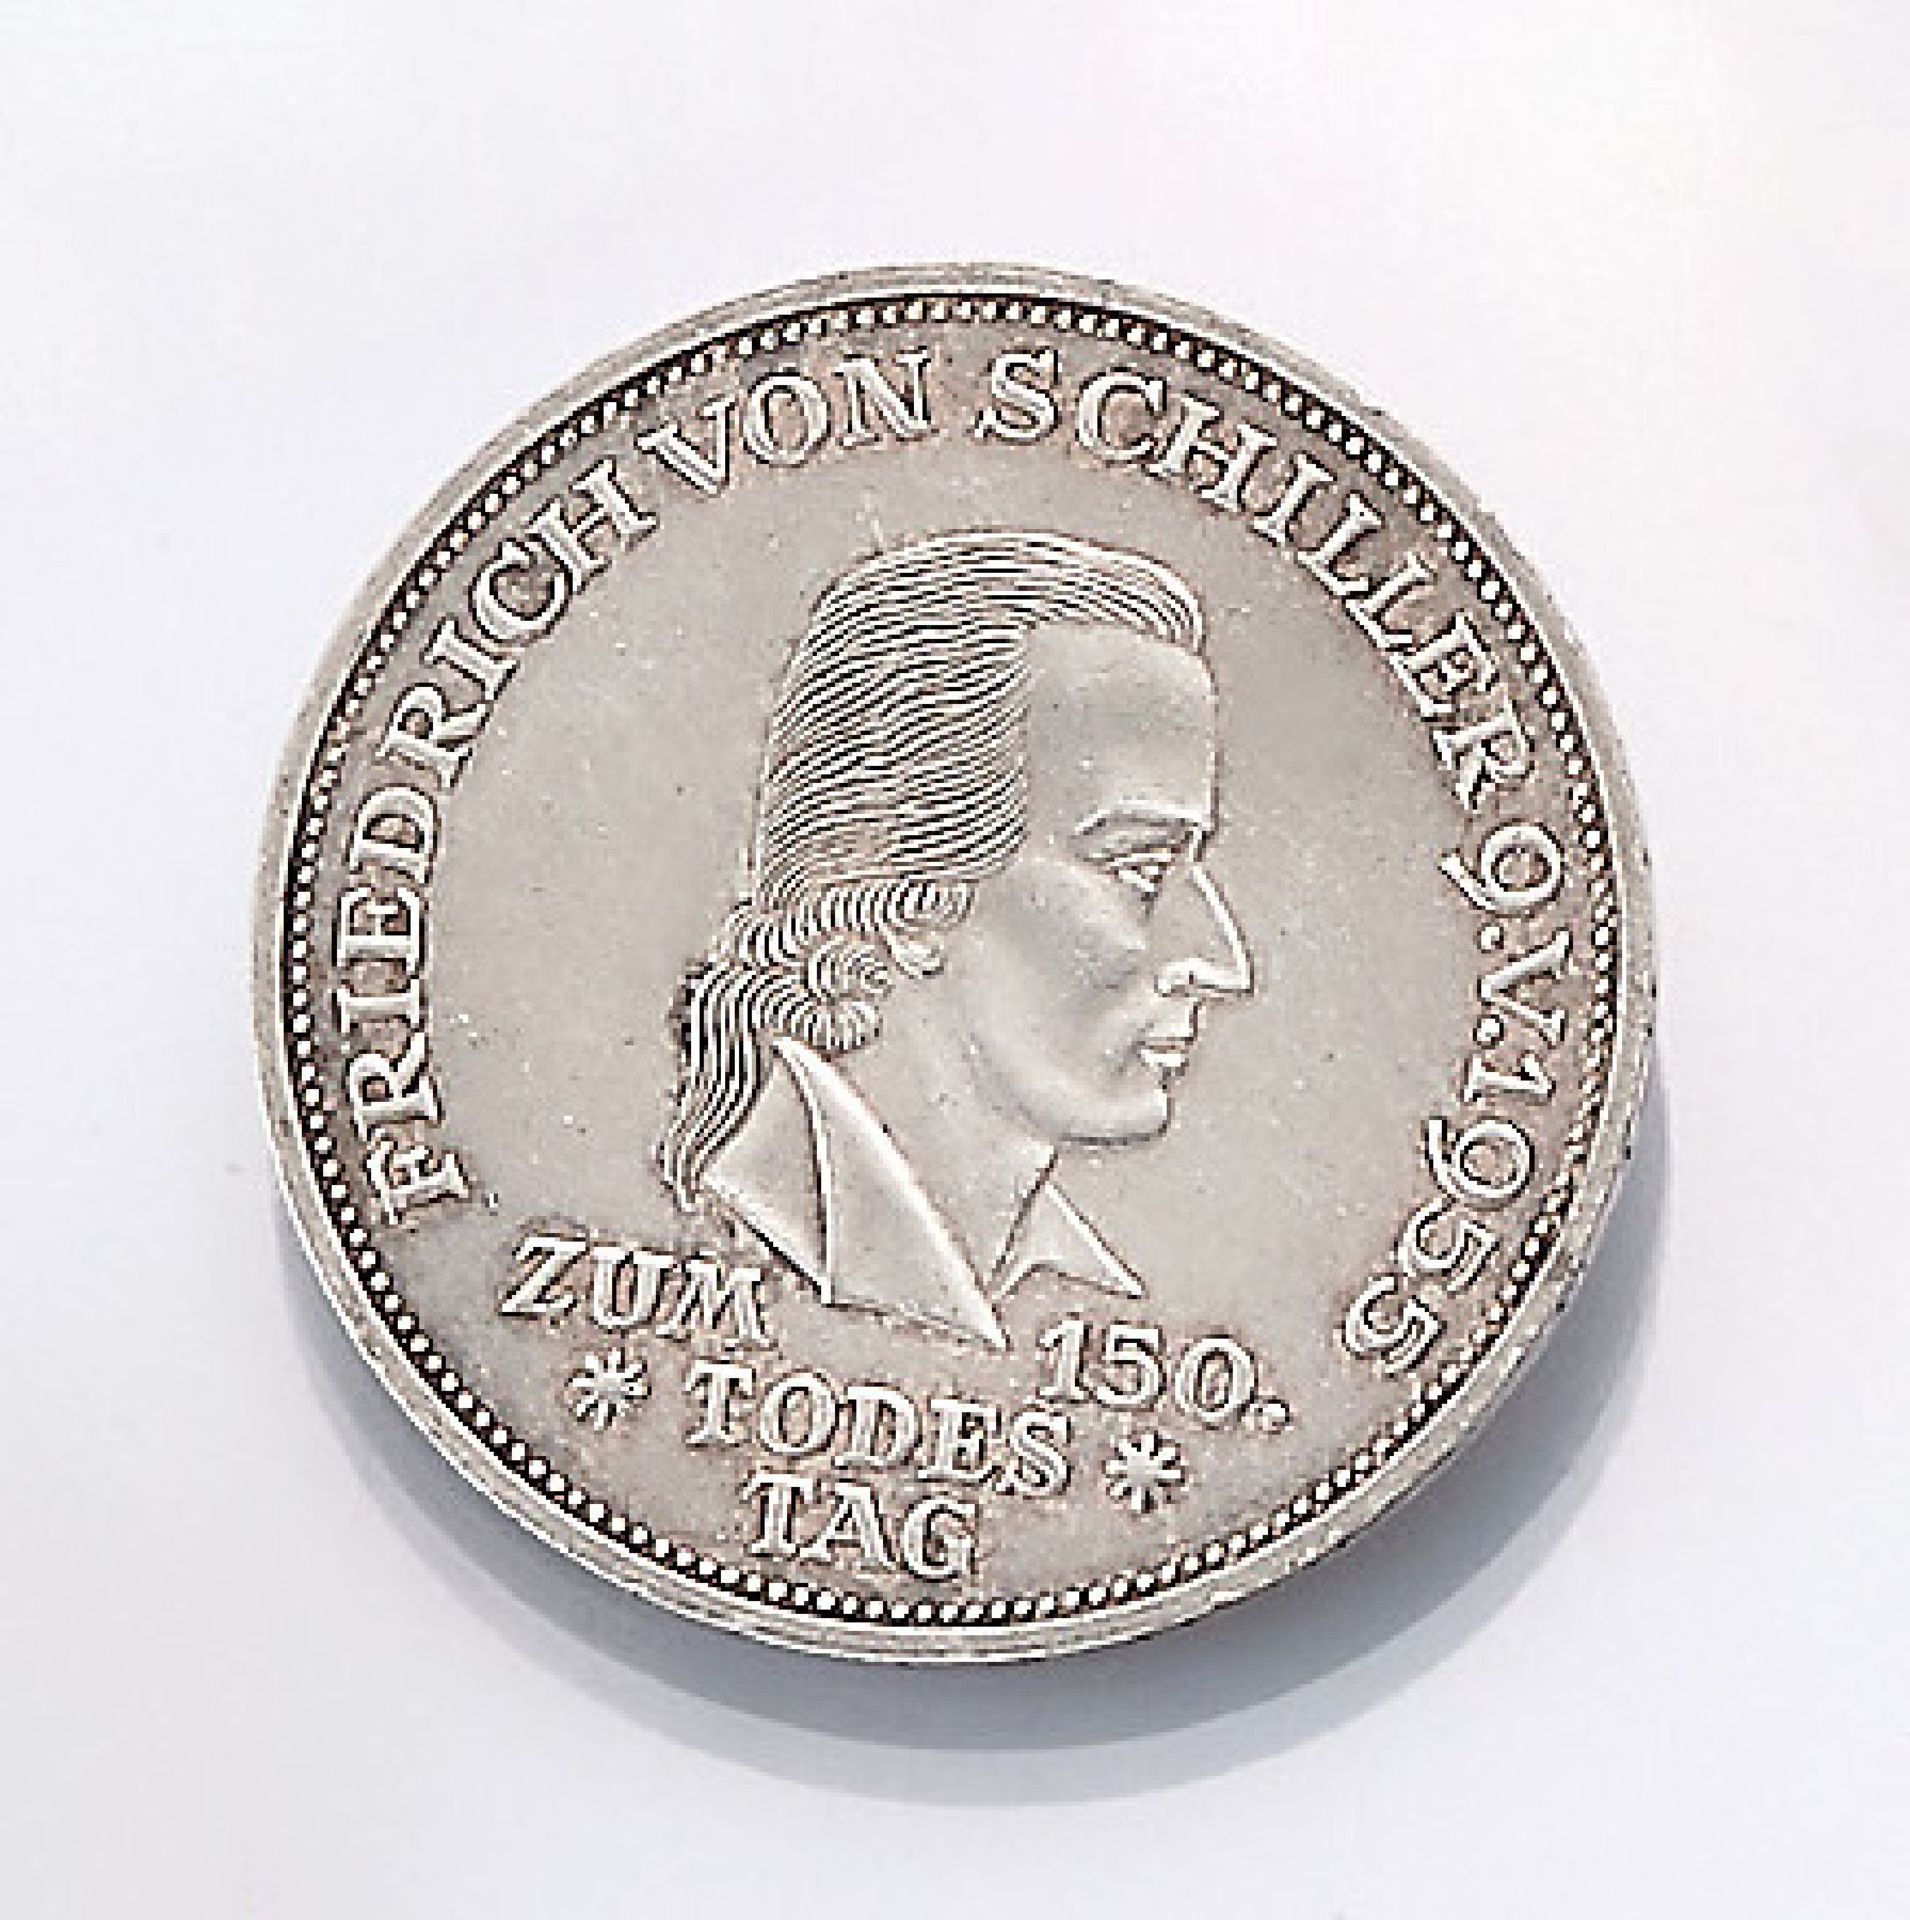 Silbermünze, 5 Mark, Deutschland, 1955, zum 150. Todestag